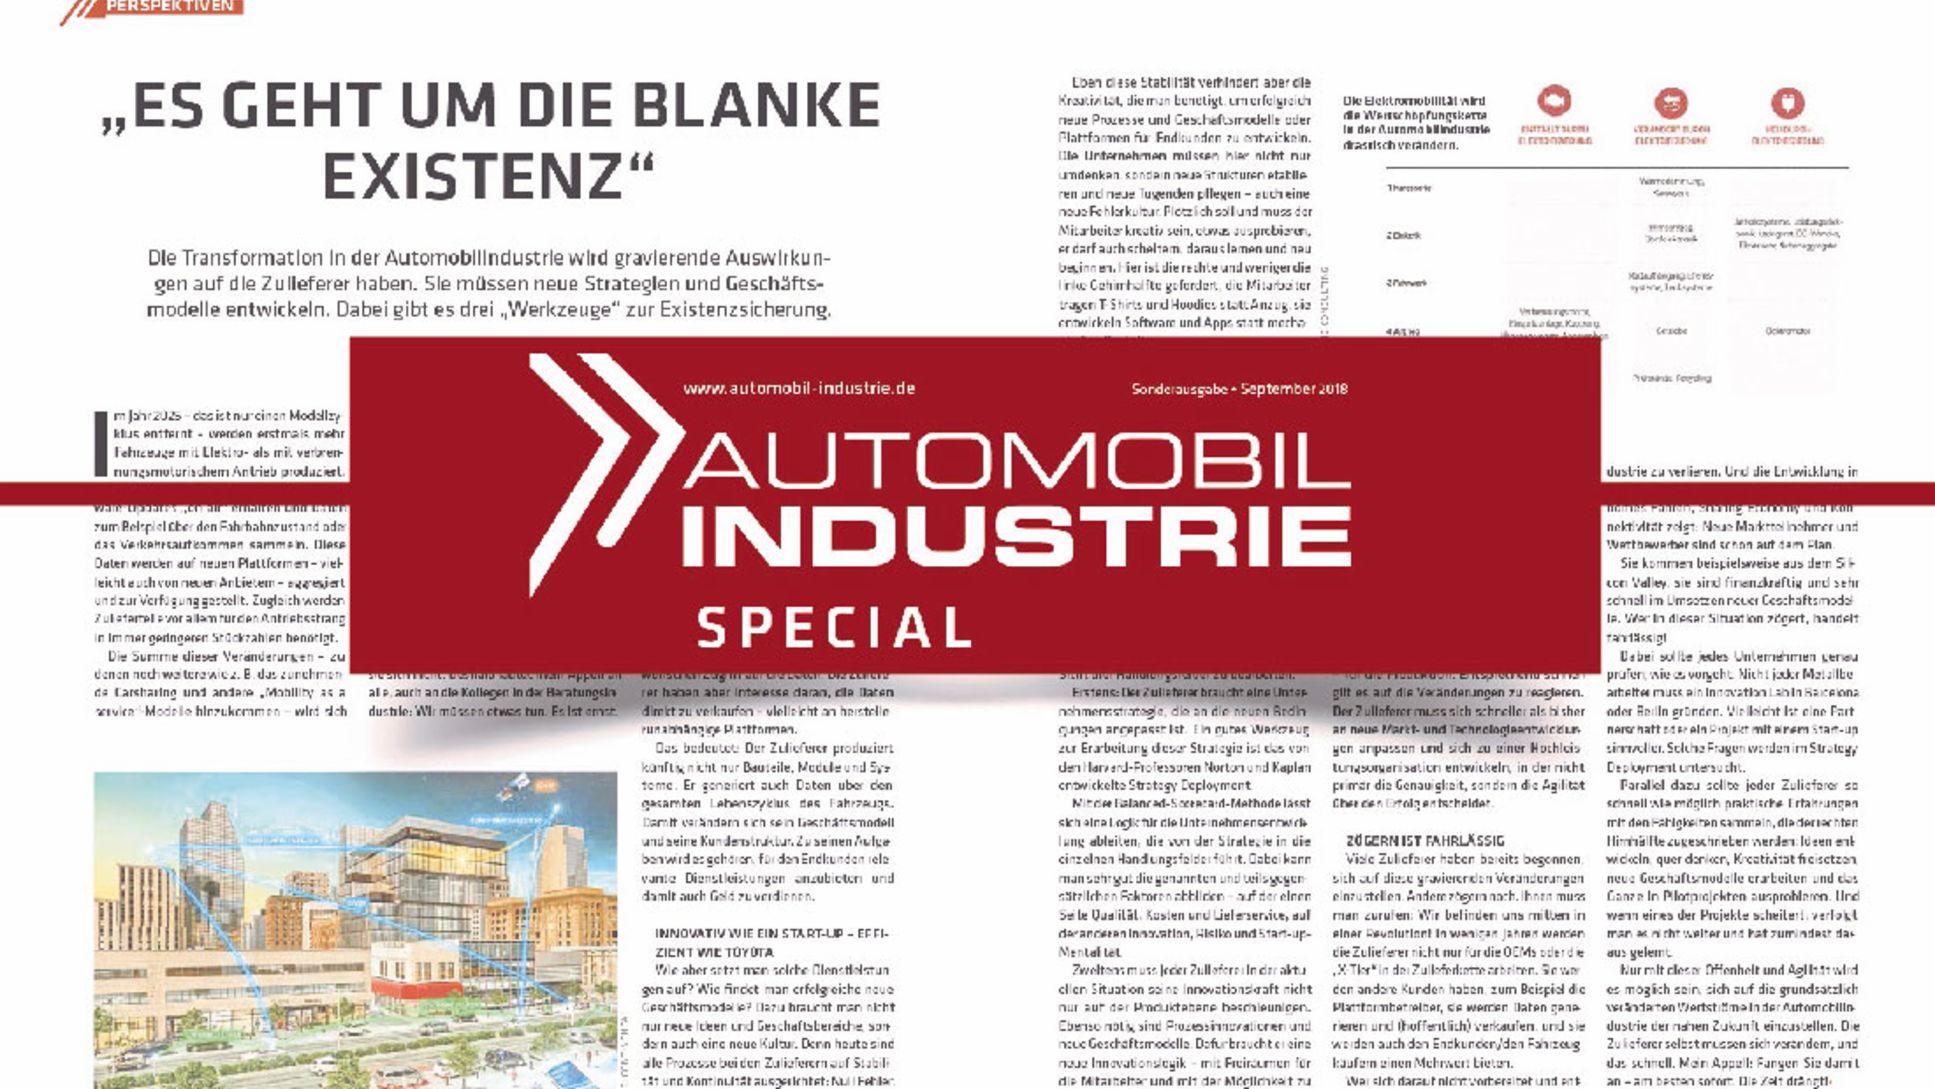 Automobil Industrie Spezial, 2018, Porsche AG